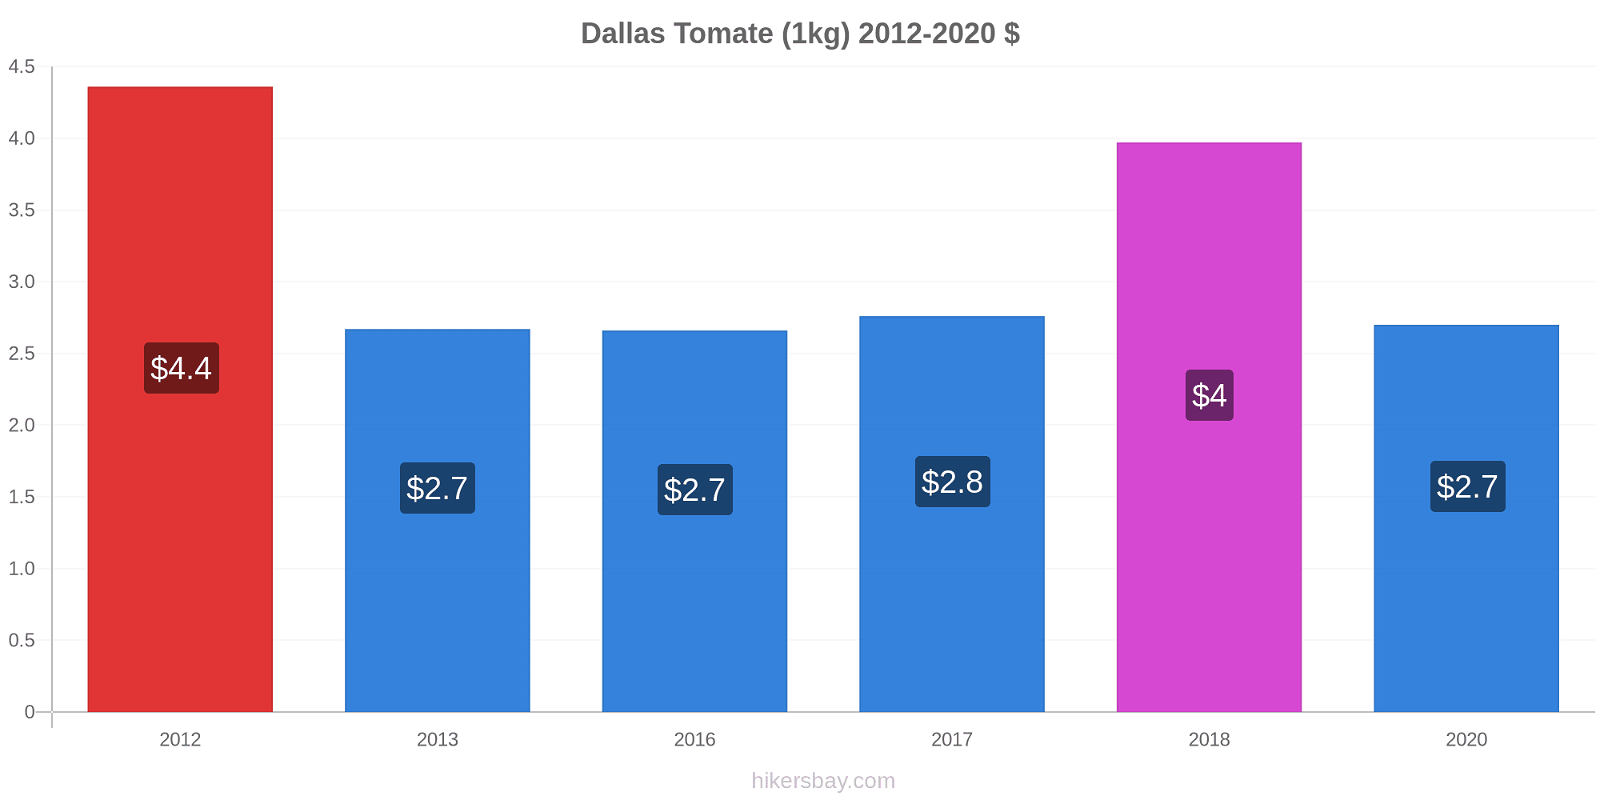 Dallas variação de preço Tomate (1kg) hikersbay.com